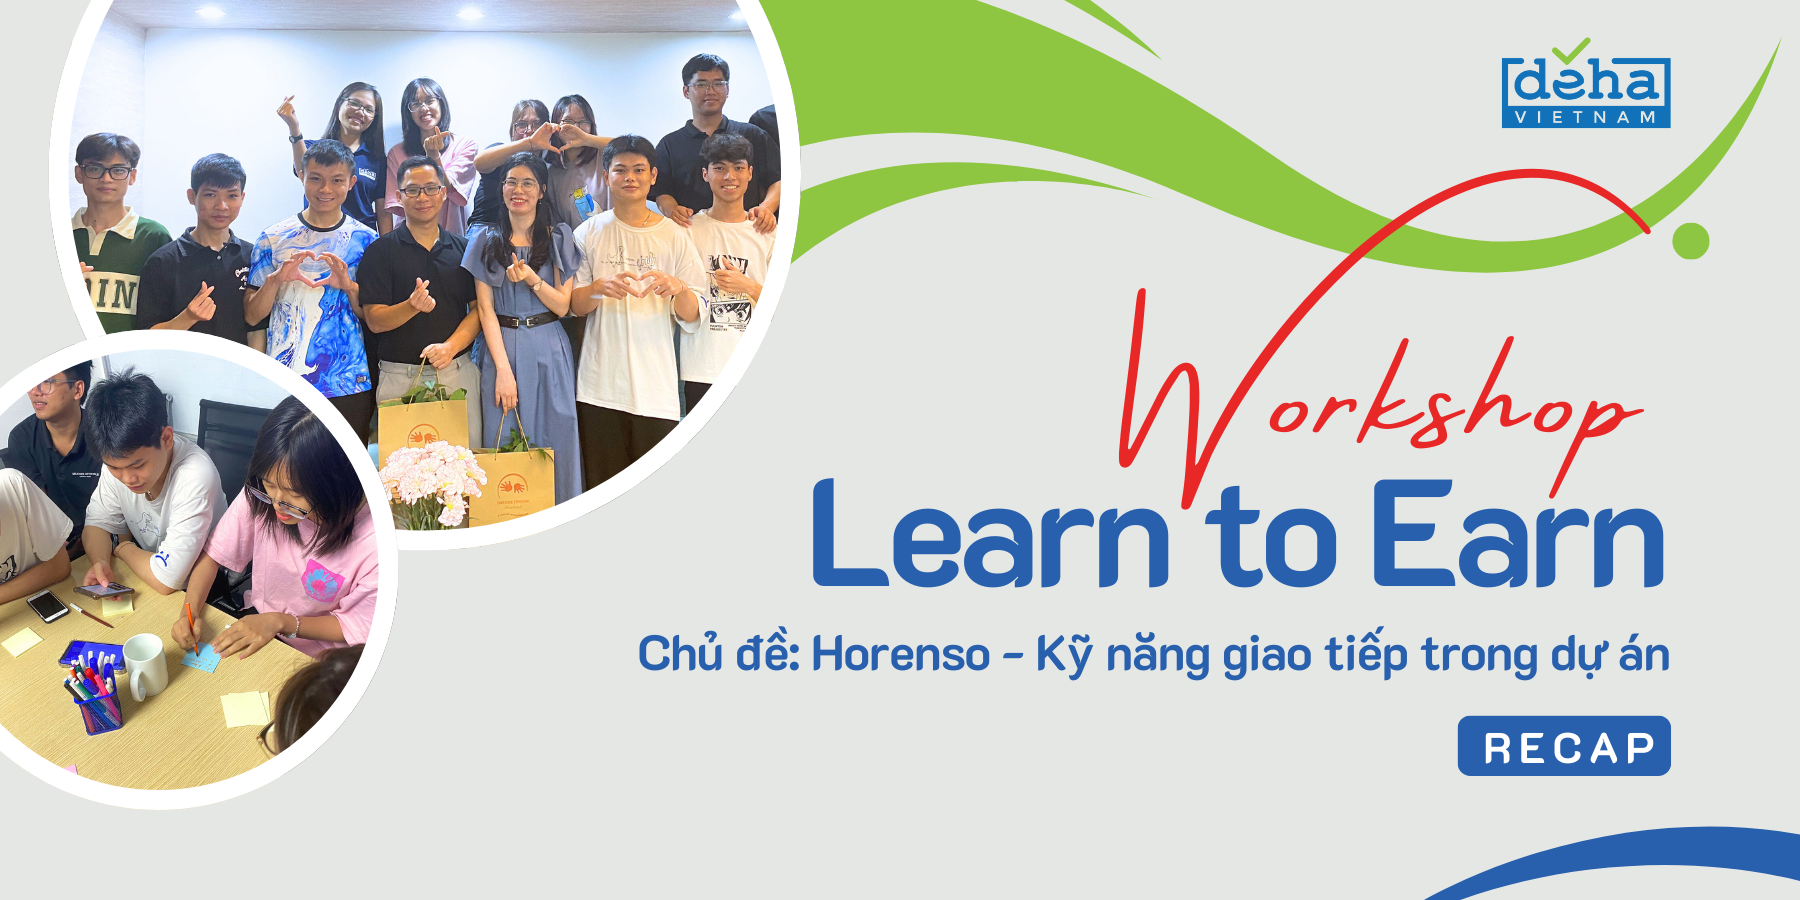 [Recap] - Workshop Learn to Earn dành cho thực tập sinh của DEHA Vietnam